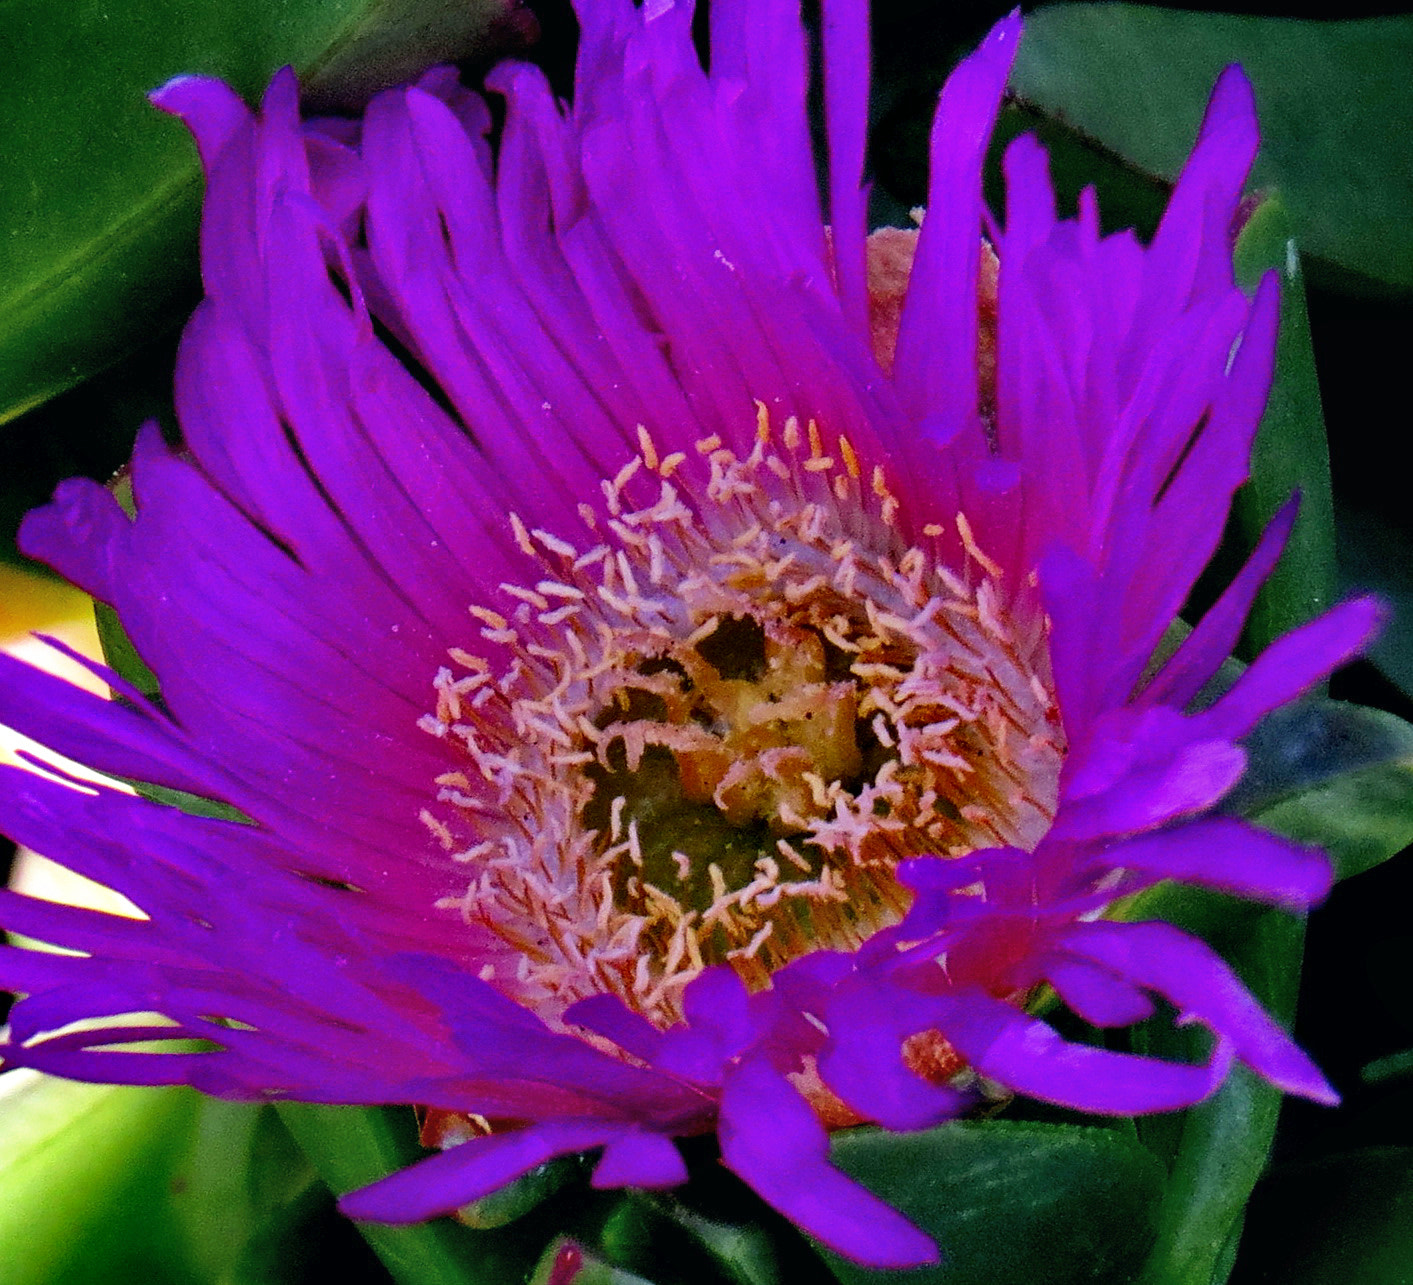 Canon PowerShot SX50 HS + 4.3 - 215.0 mm sample photo. A blue dandelion flower photography